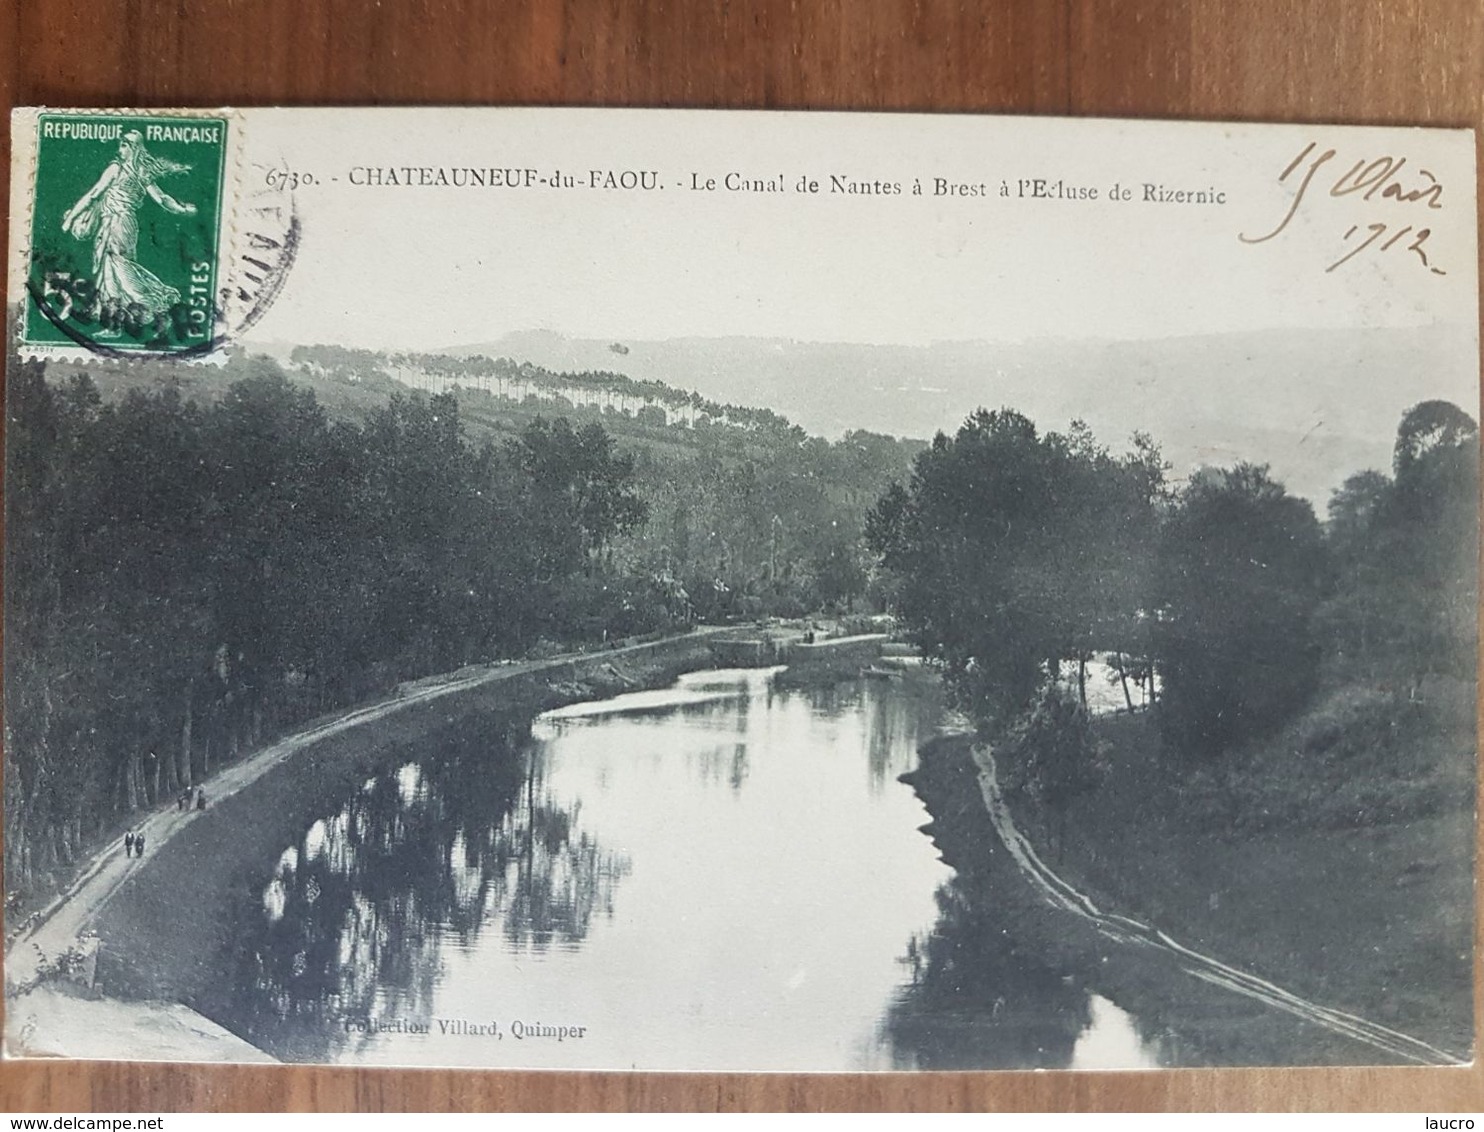 Chateauneuf Du Faou.le Canal De Nantes à Brest à L'écluse De Rizernic.édition Villard 6730 - Châteauneuf-du-Faou